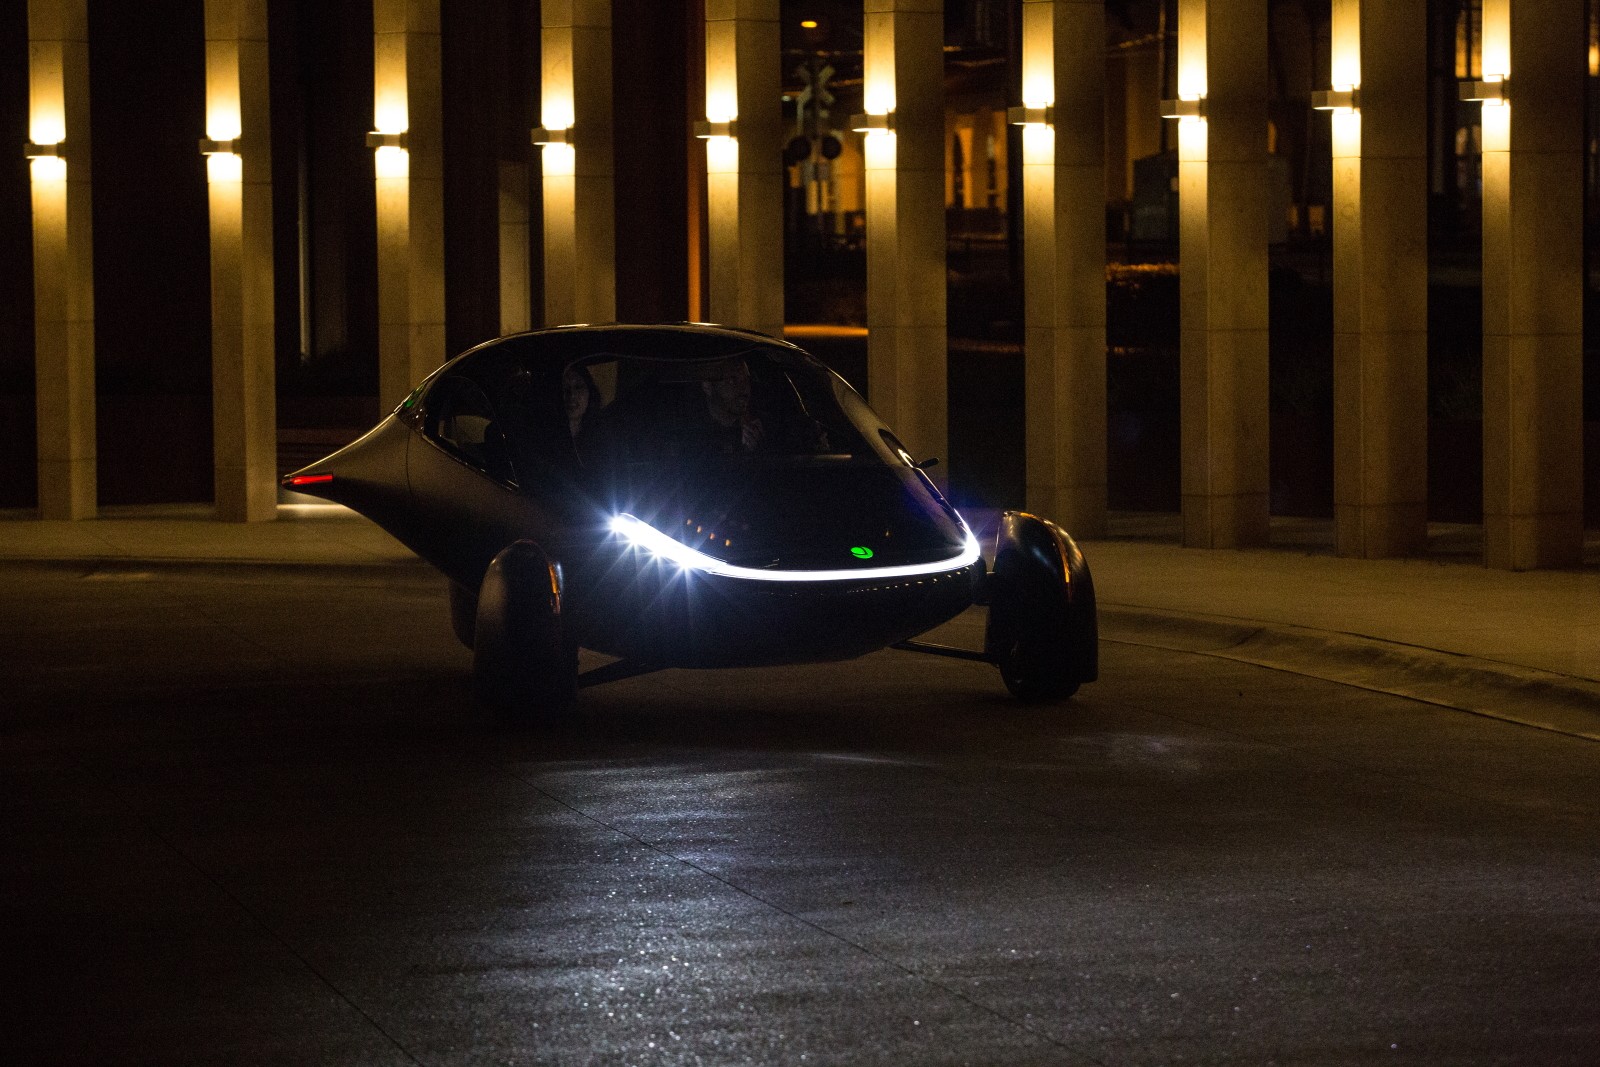 Aptera the Sol: Kendaraan Elektrik Beroda Tiga dengan Desain Futuristik